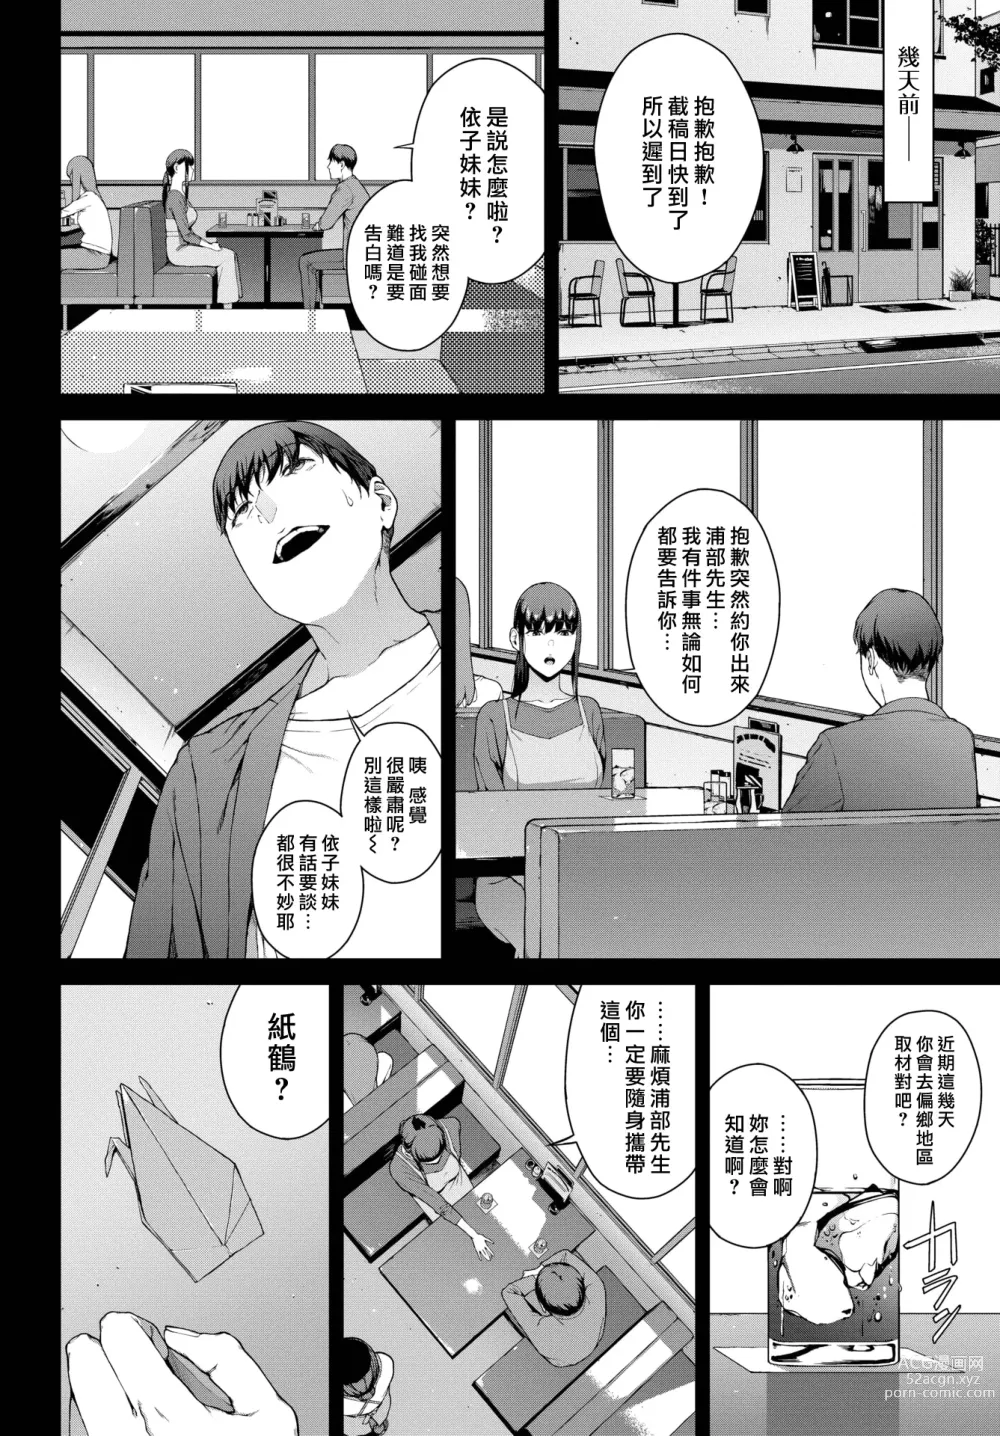 Page 2 of manga 躲雨